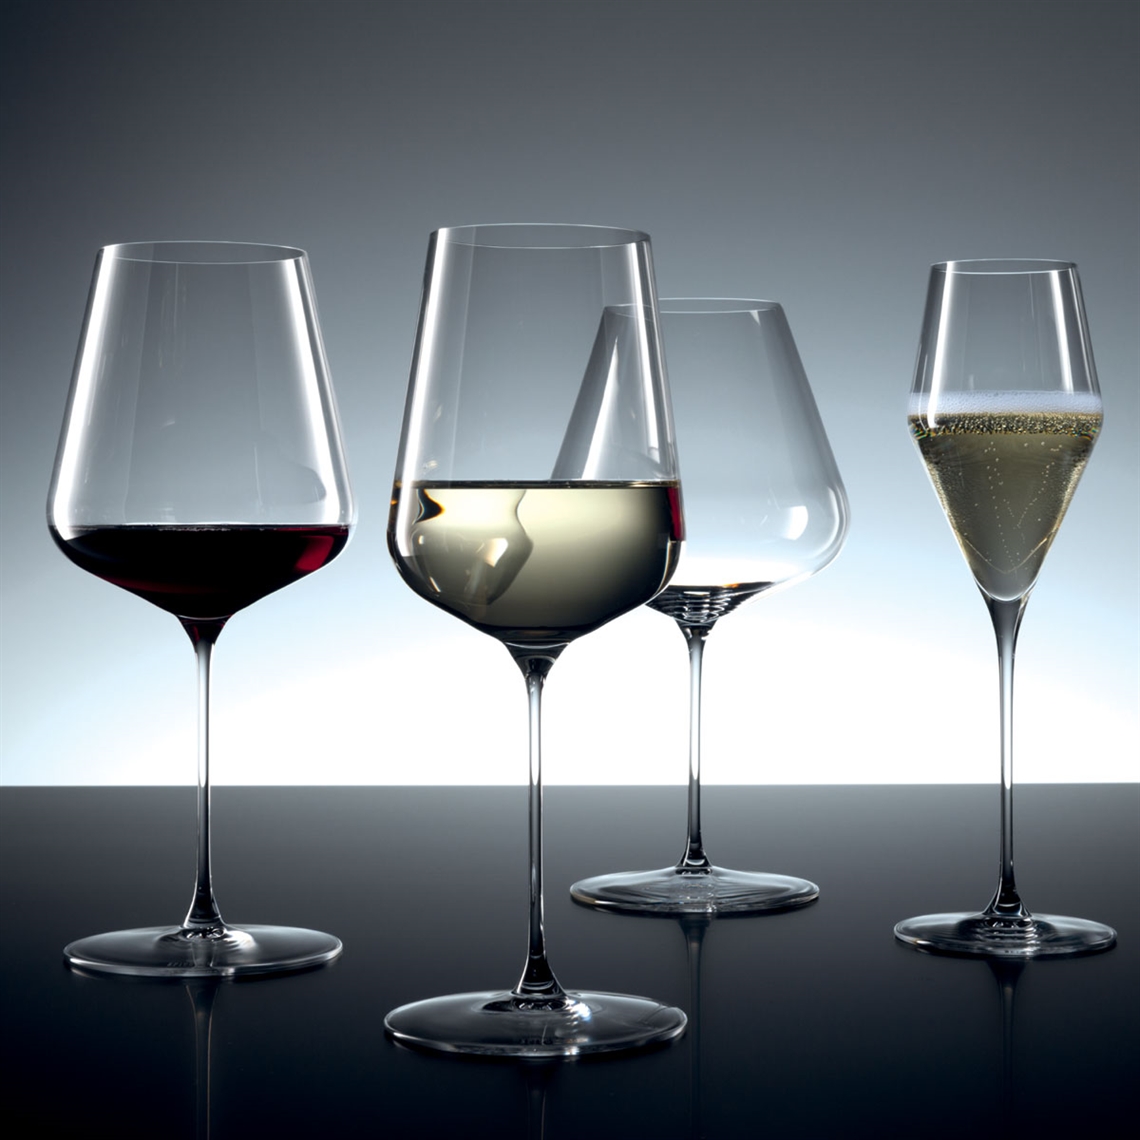 Spiegelau Restaurant Definition Bordeaux Glass 750ml